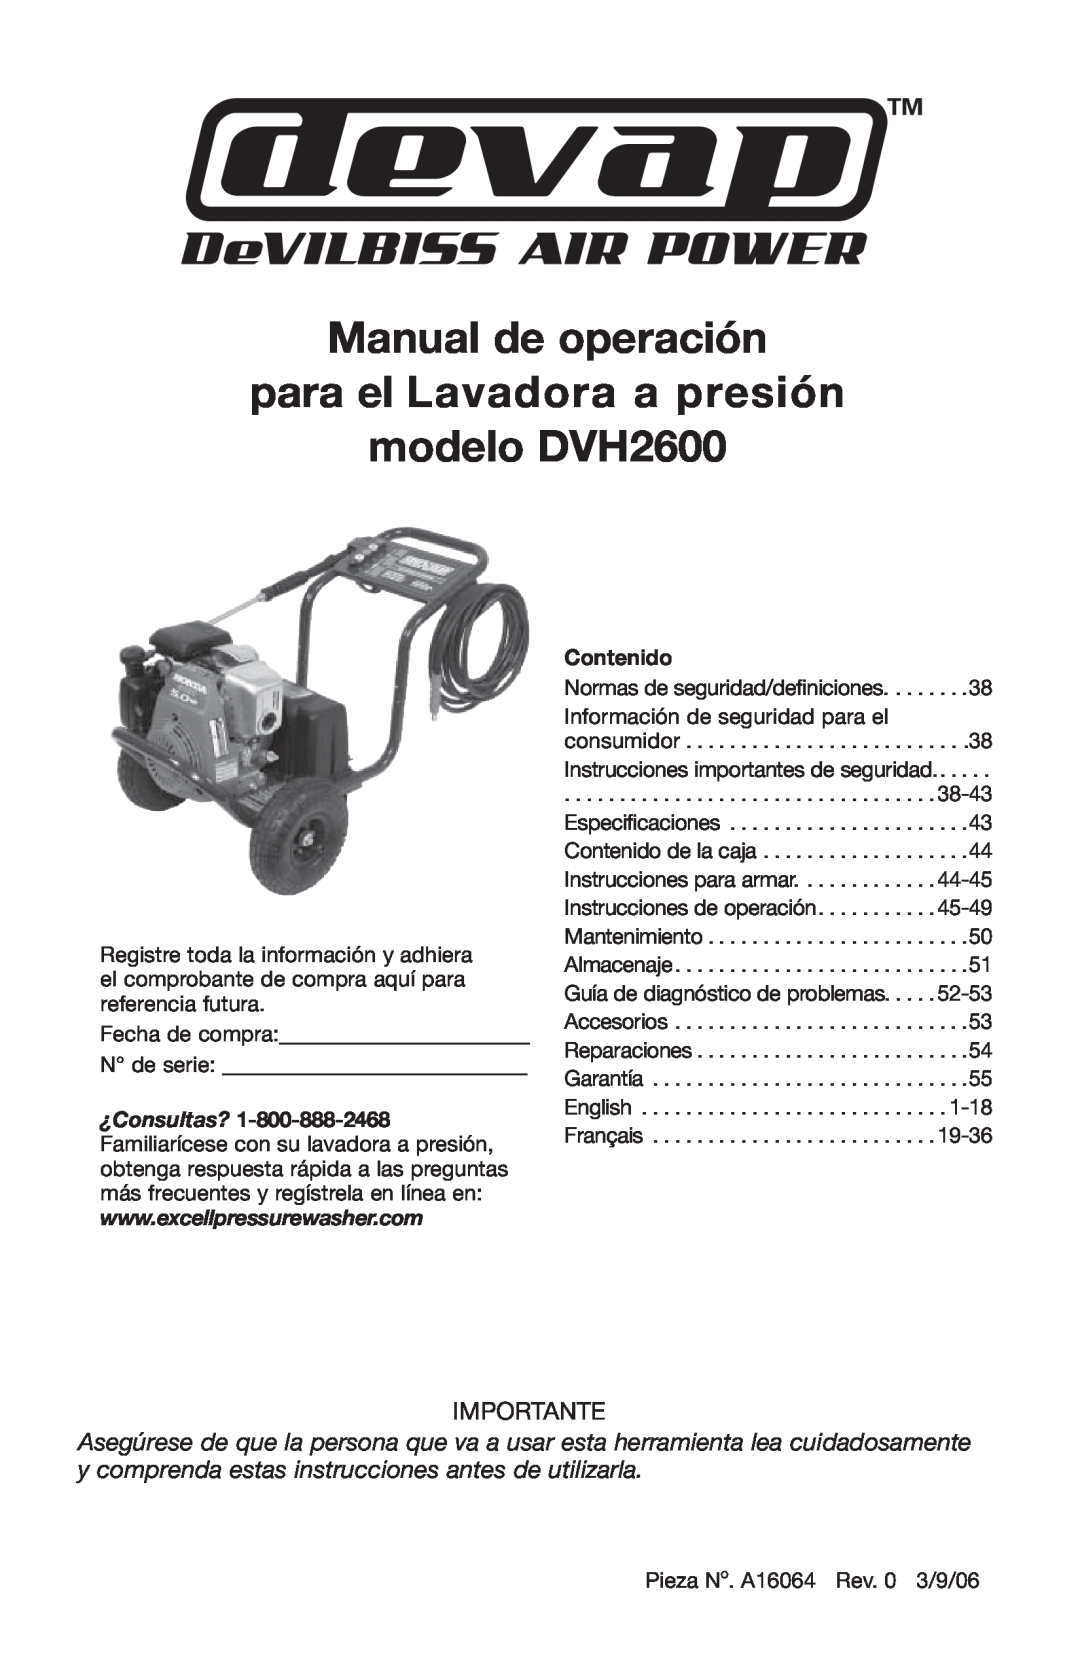 DeVillbiss Air Power Company A16064 Manual de operación para el Lavadora a presión modelo DVH2600, Importante 